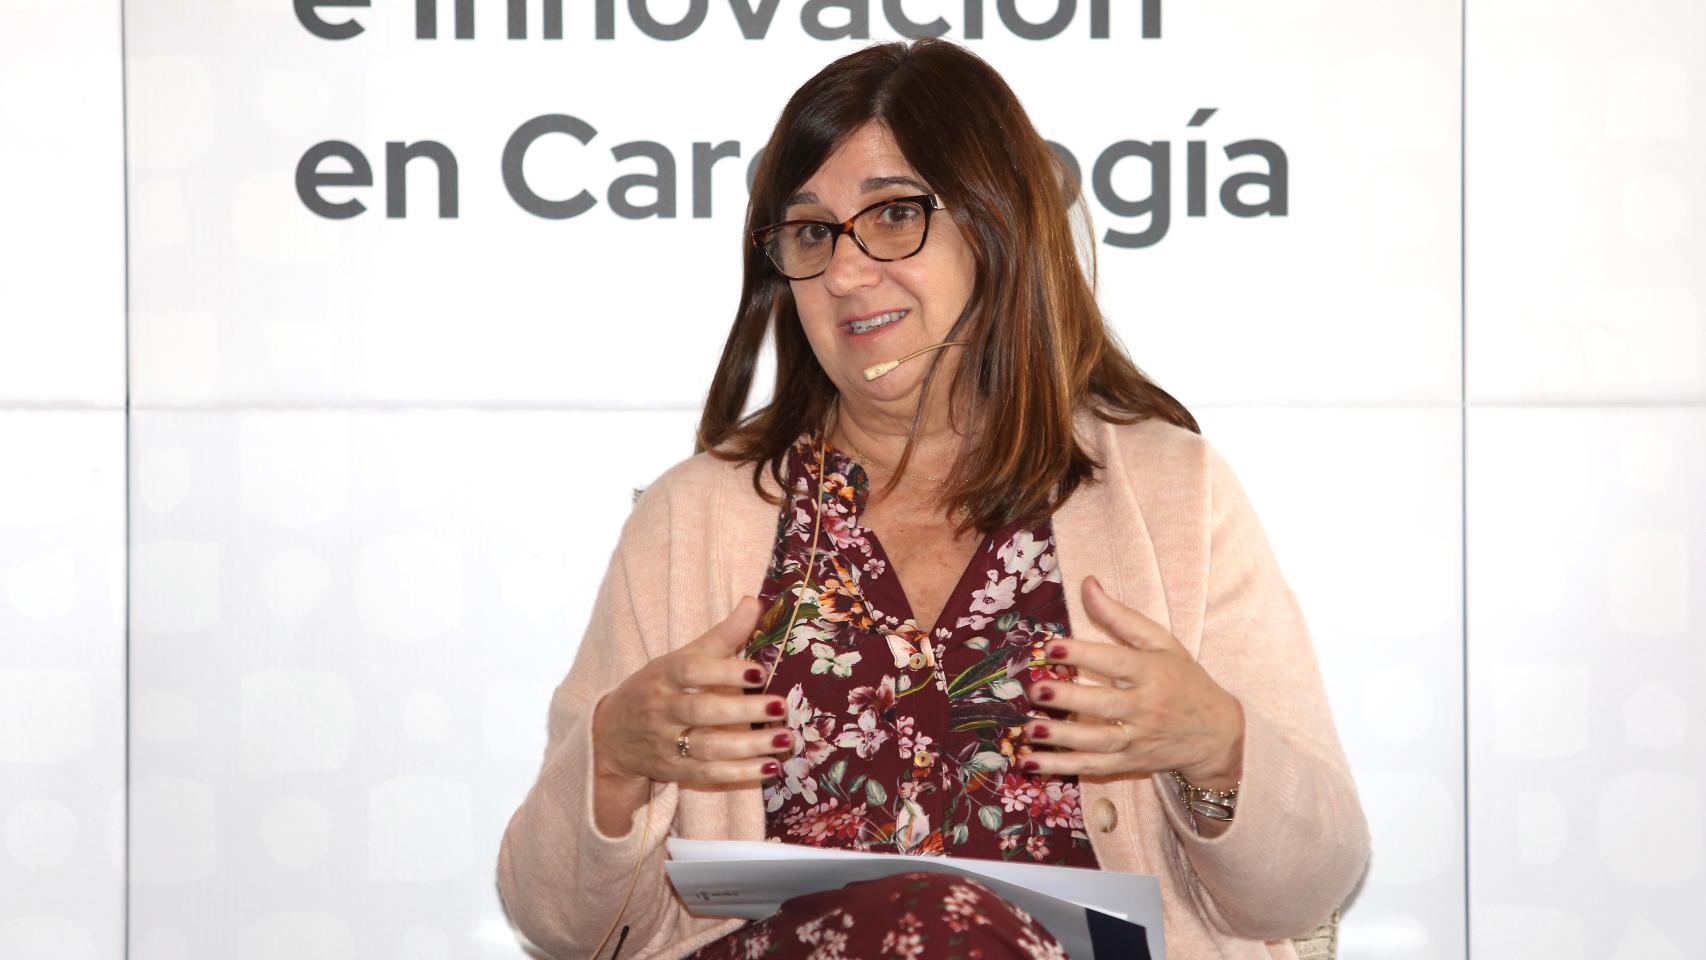 Regina Leal en la Jornada Prevención e Innovación en Cardiología. Foto: Óscar Huertas.